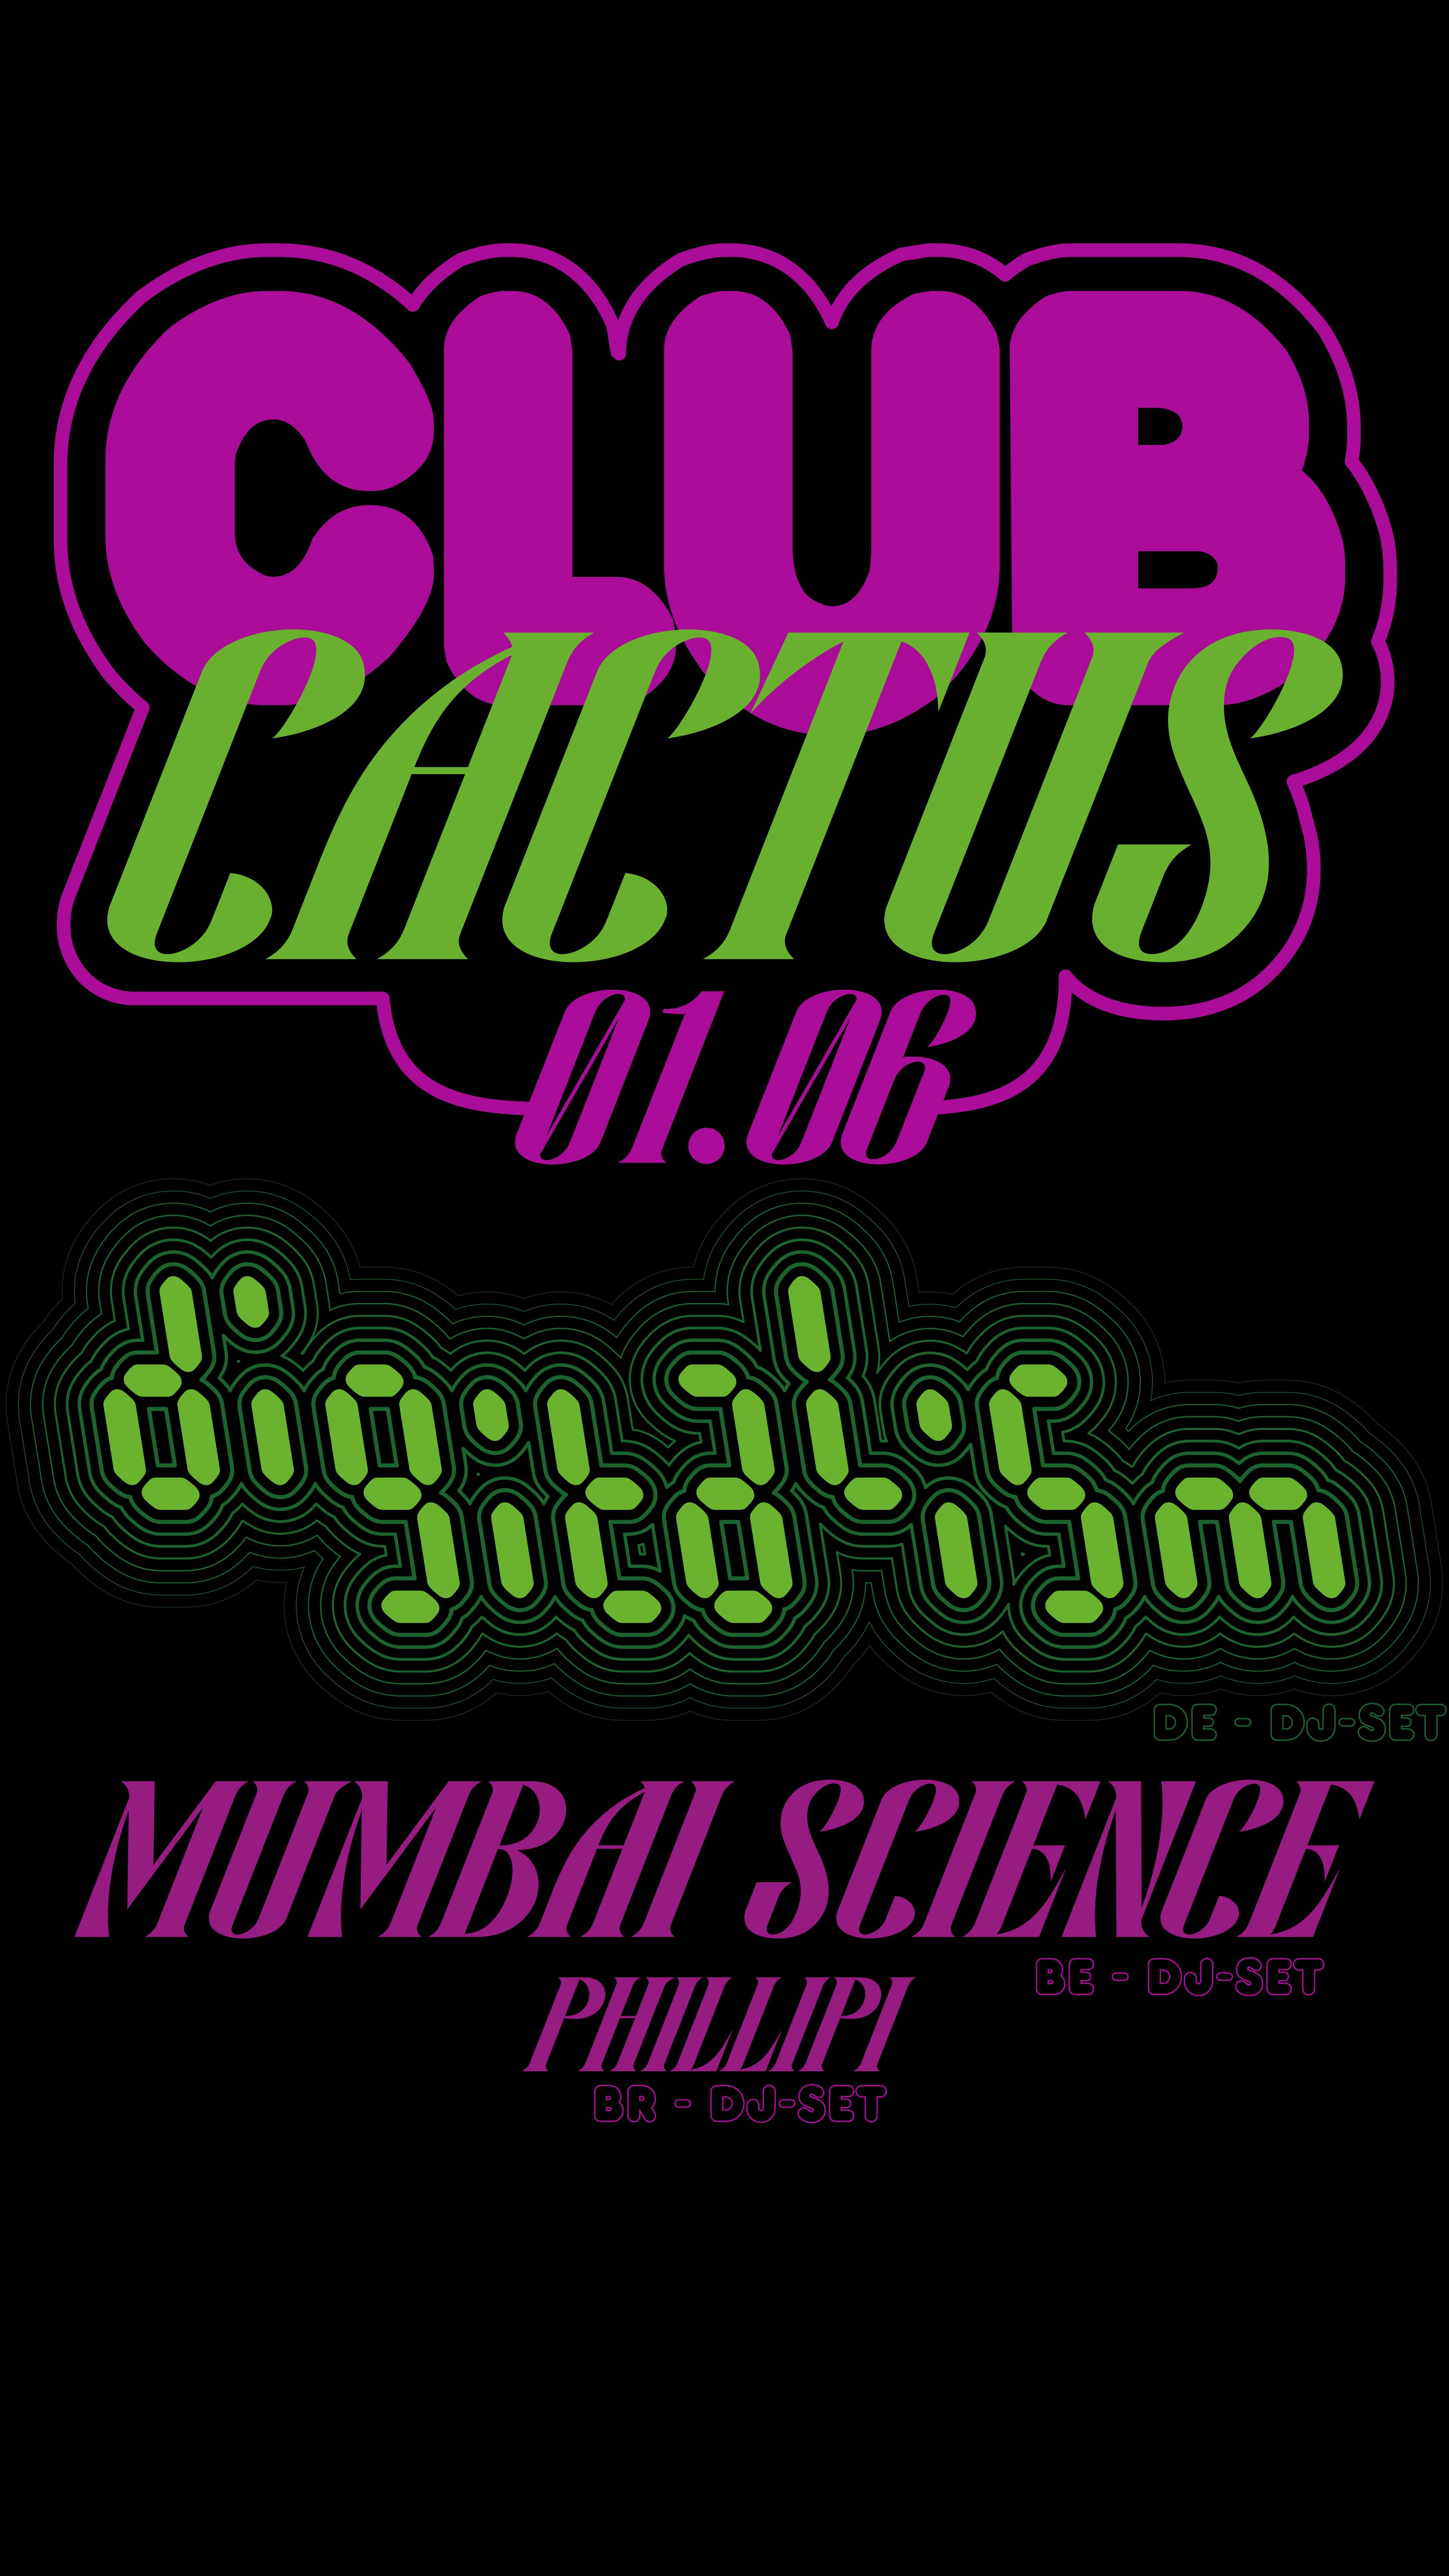 Digitalism + Mumbai Science + Phillipi - フライヤー表